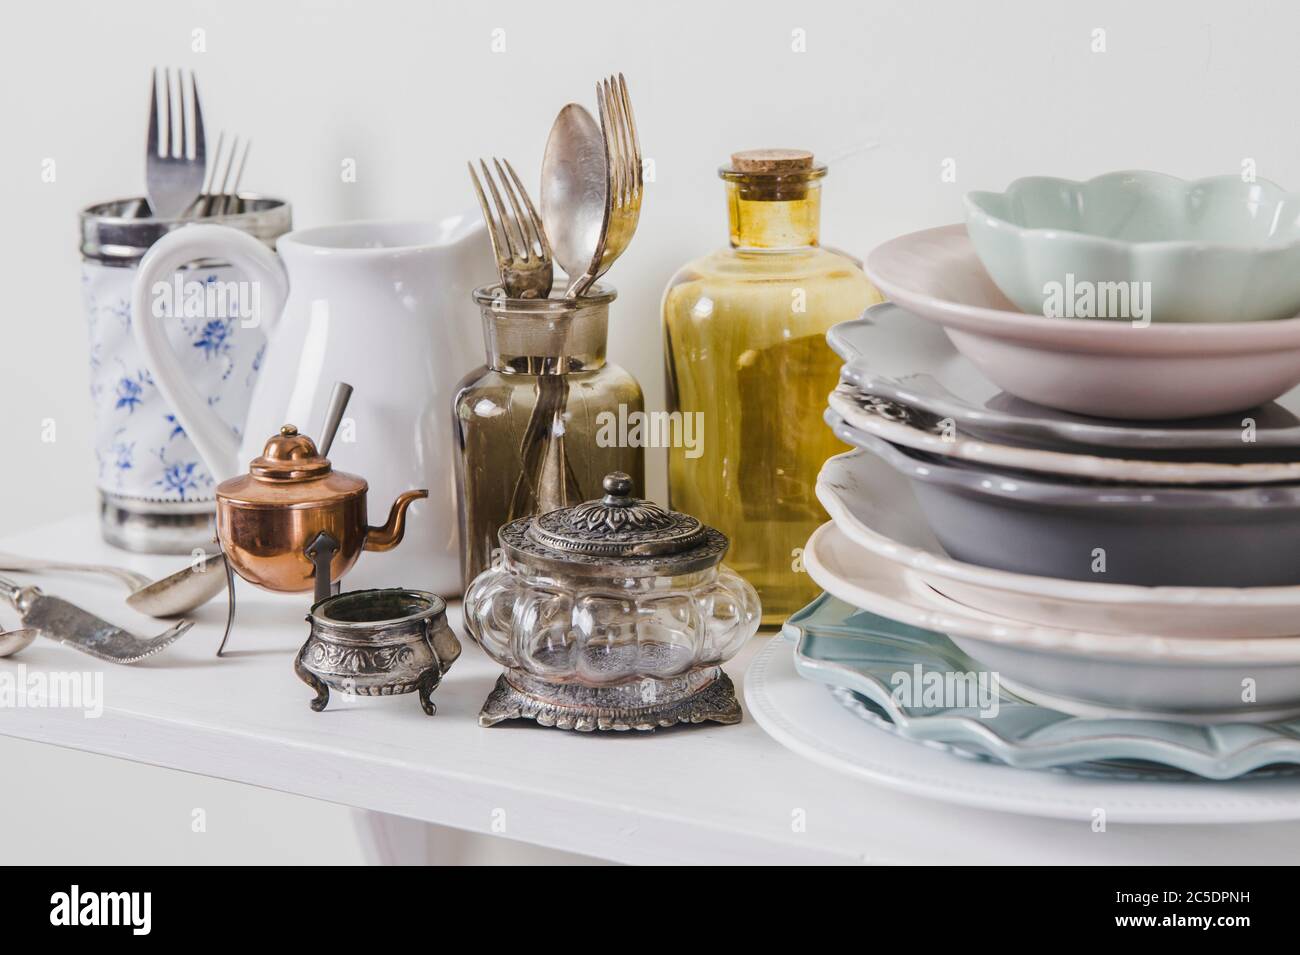 Acheter de la vaisselle ancienne vintage romantique dans le concept de magasin secondaire. Pile de vaisselle ancienne sur l'étagère du magasin pour la cuisine. Banque D'Images